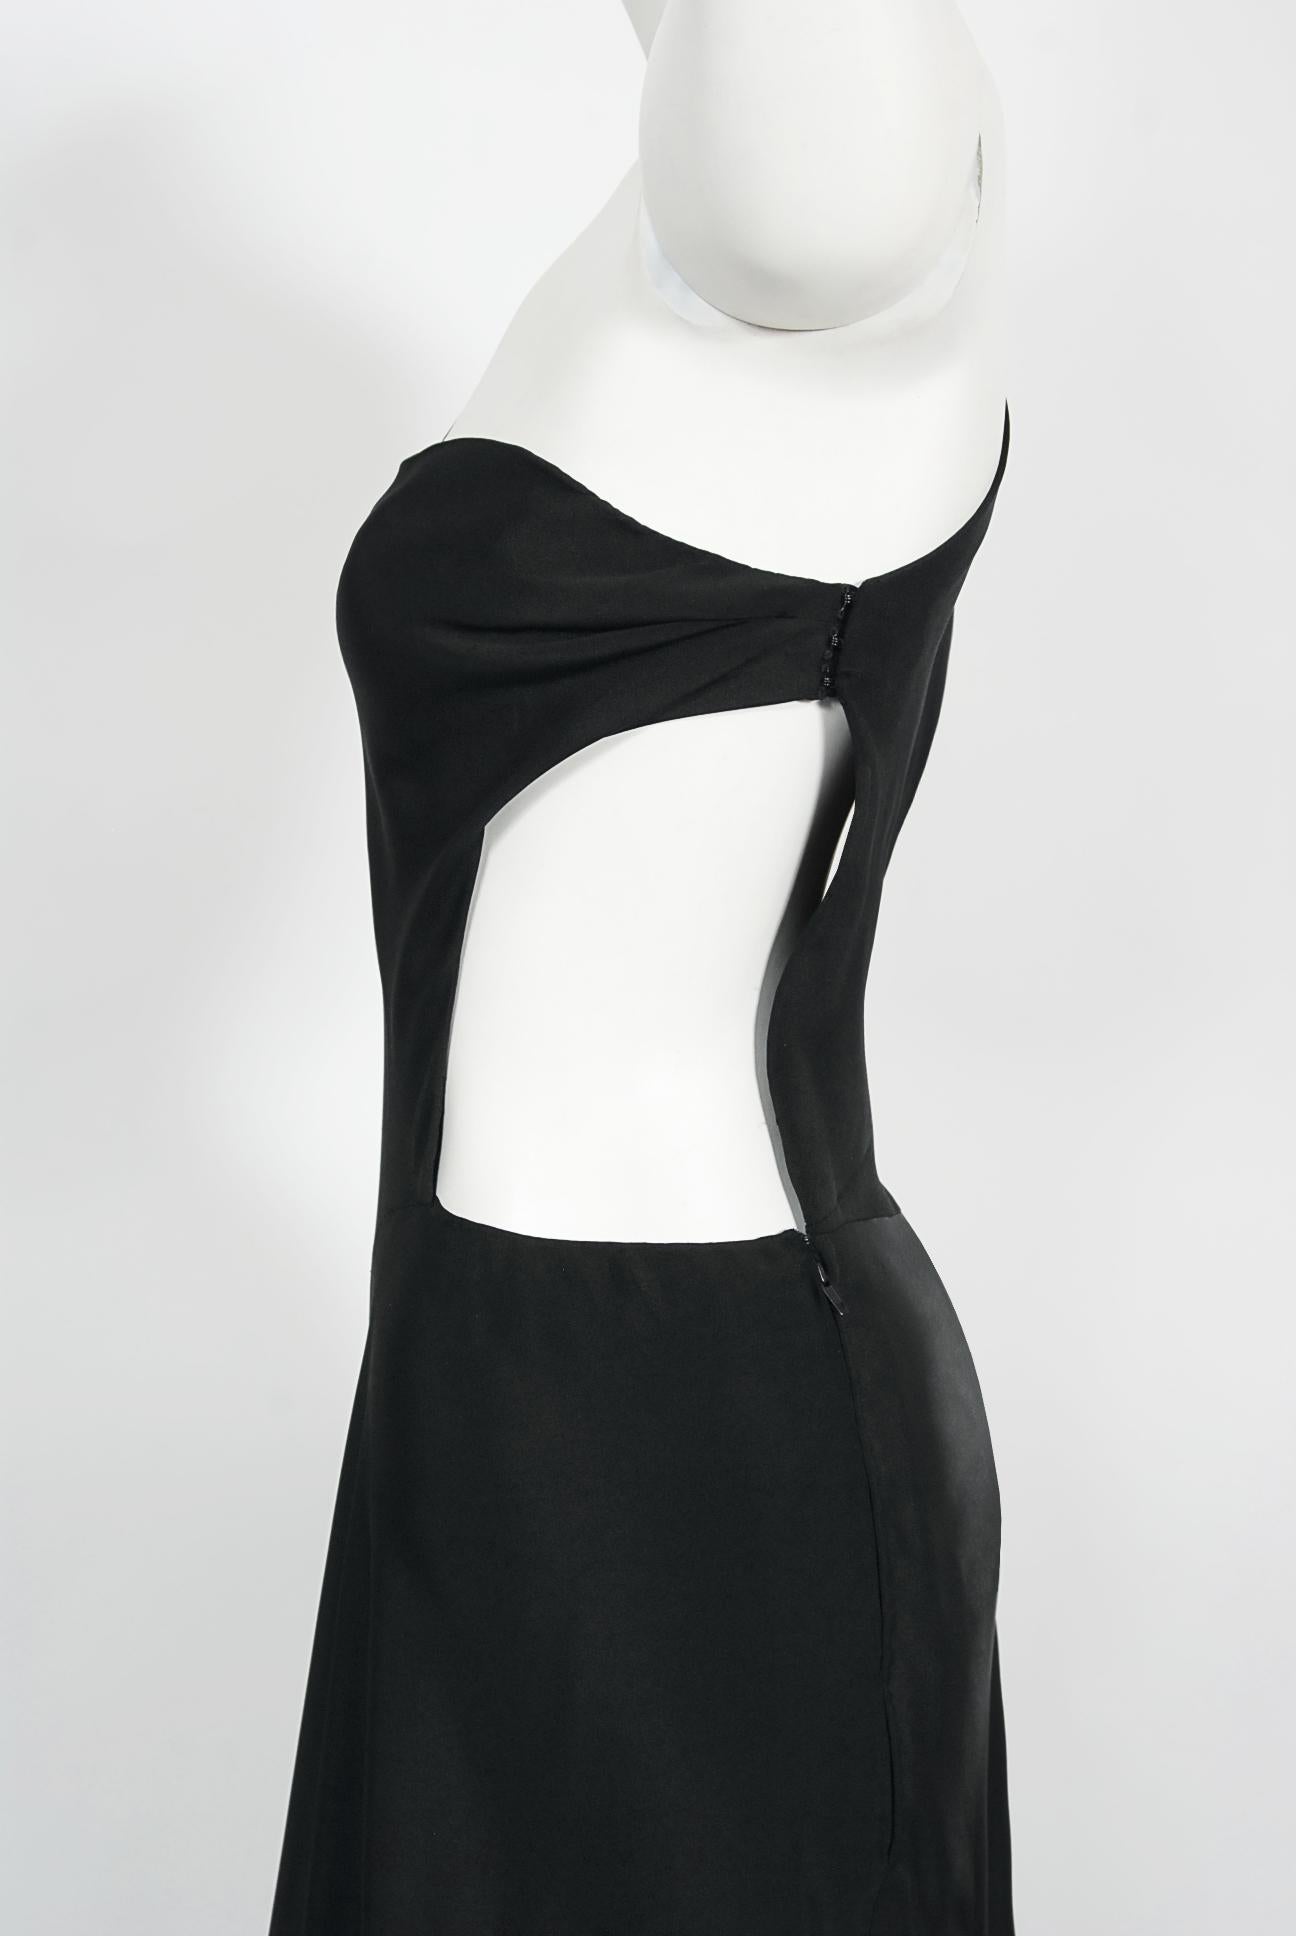 Vintage 1994 Philippe Venet Couture Black Silk Asymmetric Cut Out Bias-Cut Gown For Sale 3